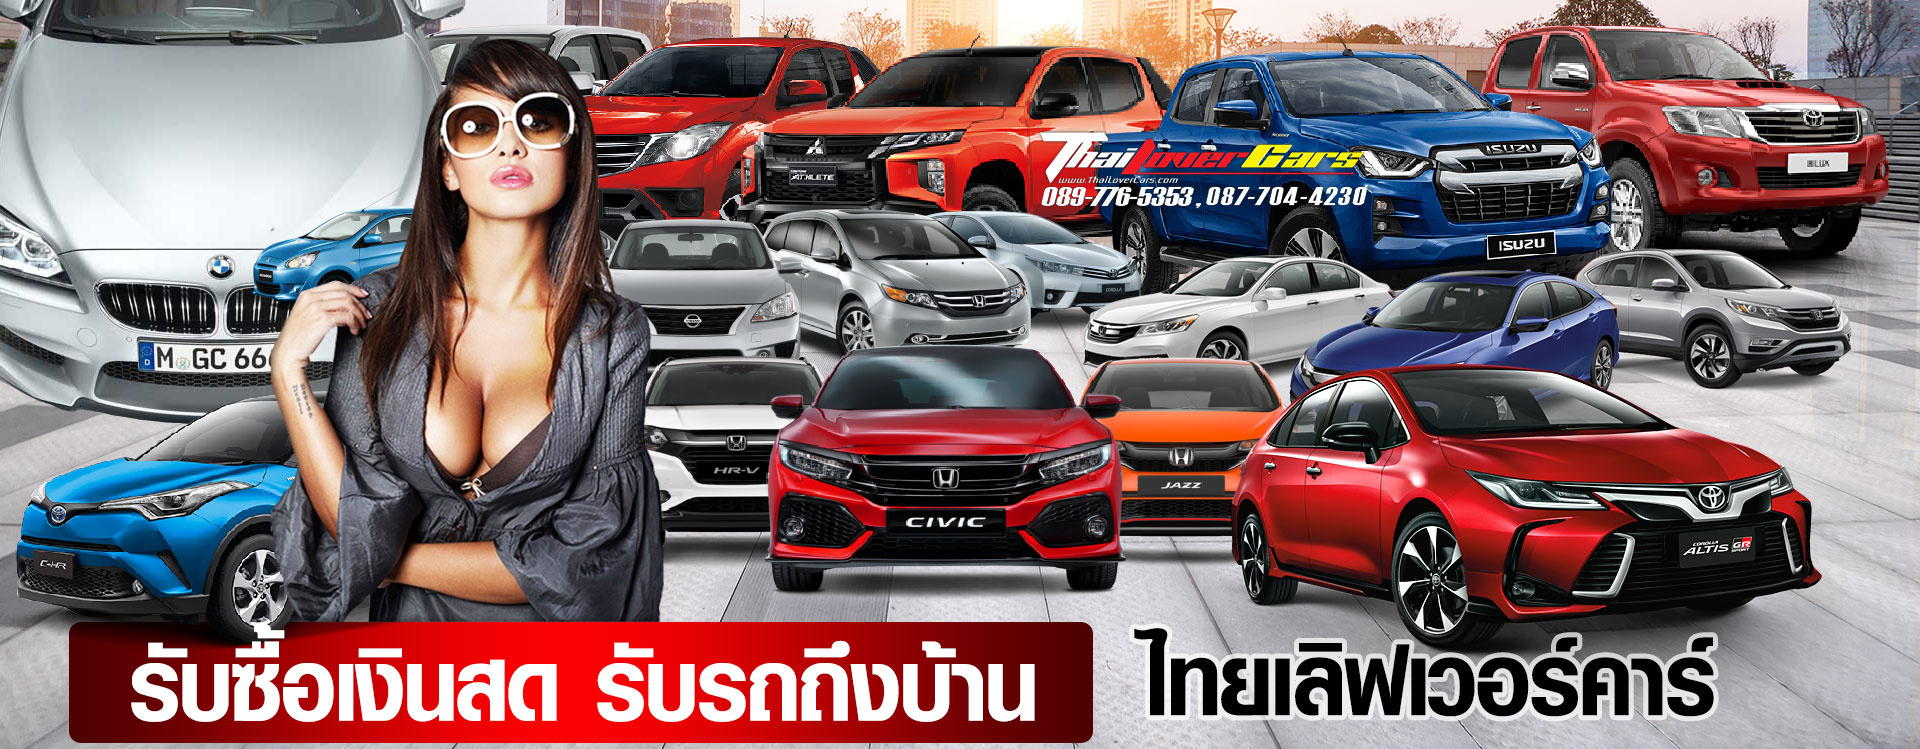 รับซื้อรถยนต์ ทั่วประเทศไทยเงินสด ทุกรุ่น ทุกยี่ห้อ รับซื้อรถบ้านราคาสูง